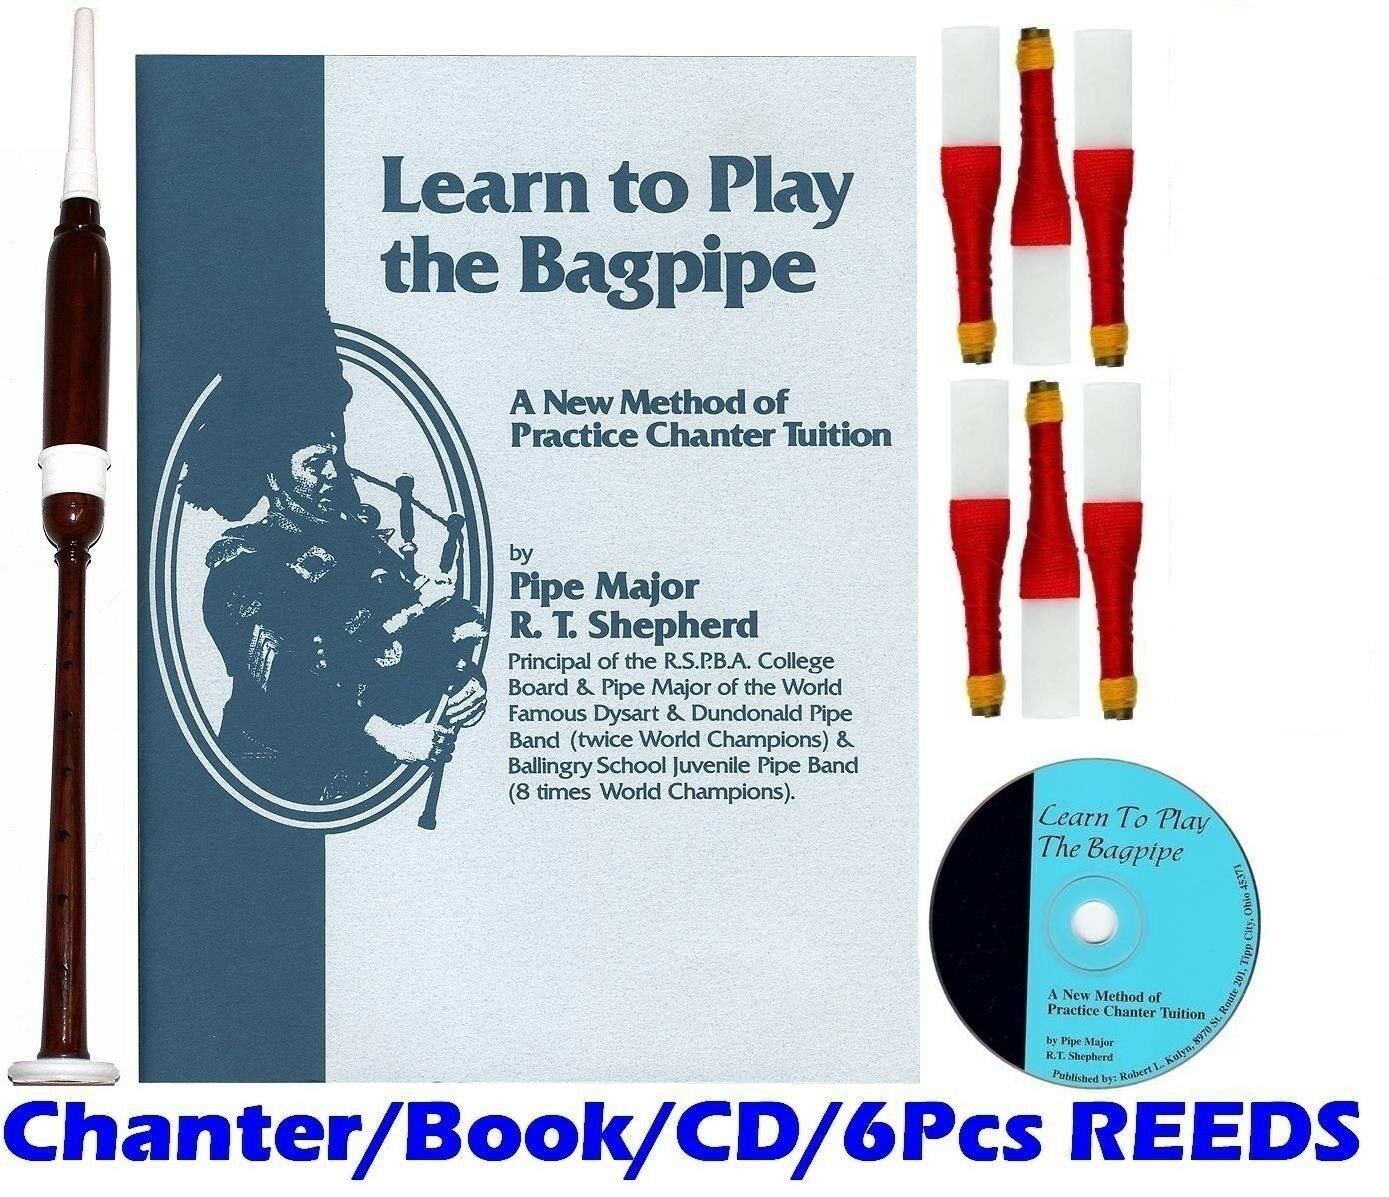 New Deura Bagpipe Practice Chanter, Book Cd And 6 Reeds $45